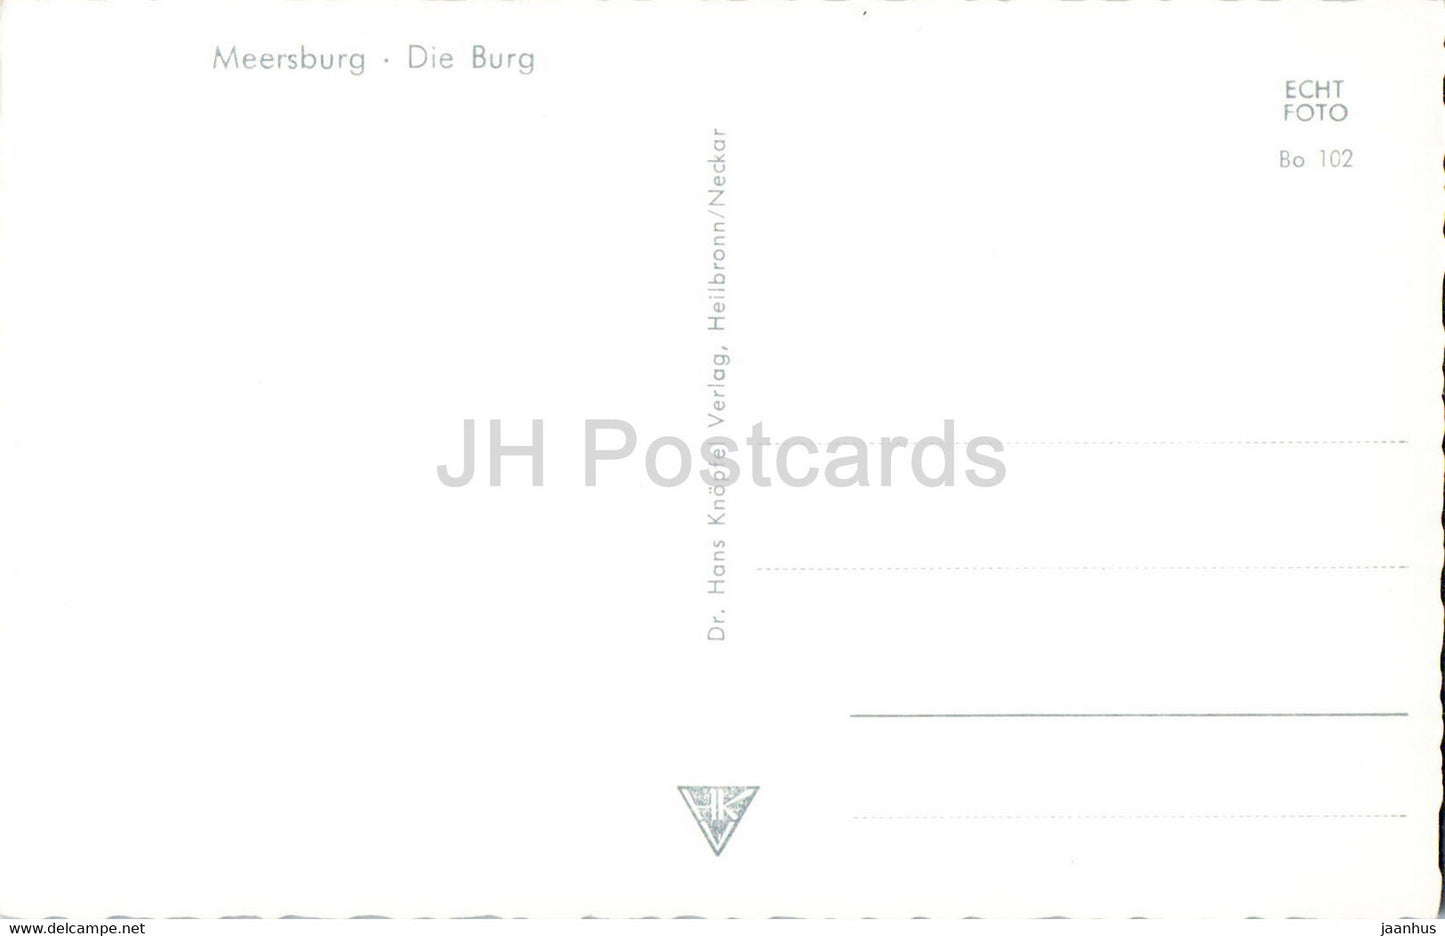 Meersburg - Die Burg - castle - old postcard - Germany - unused